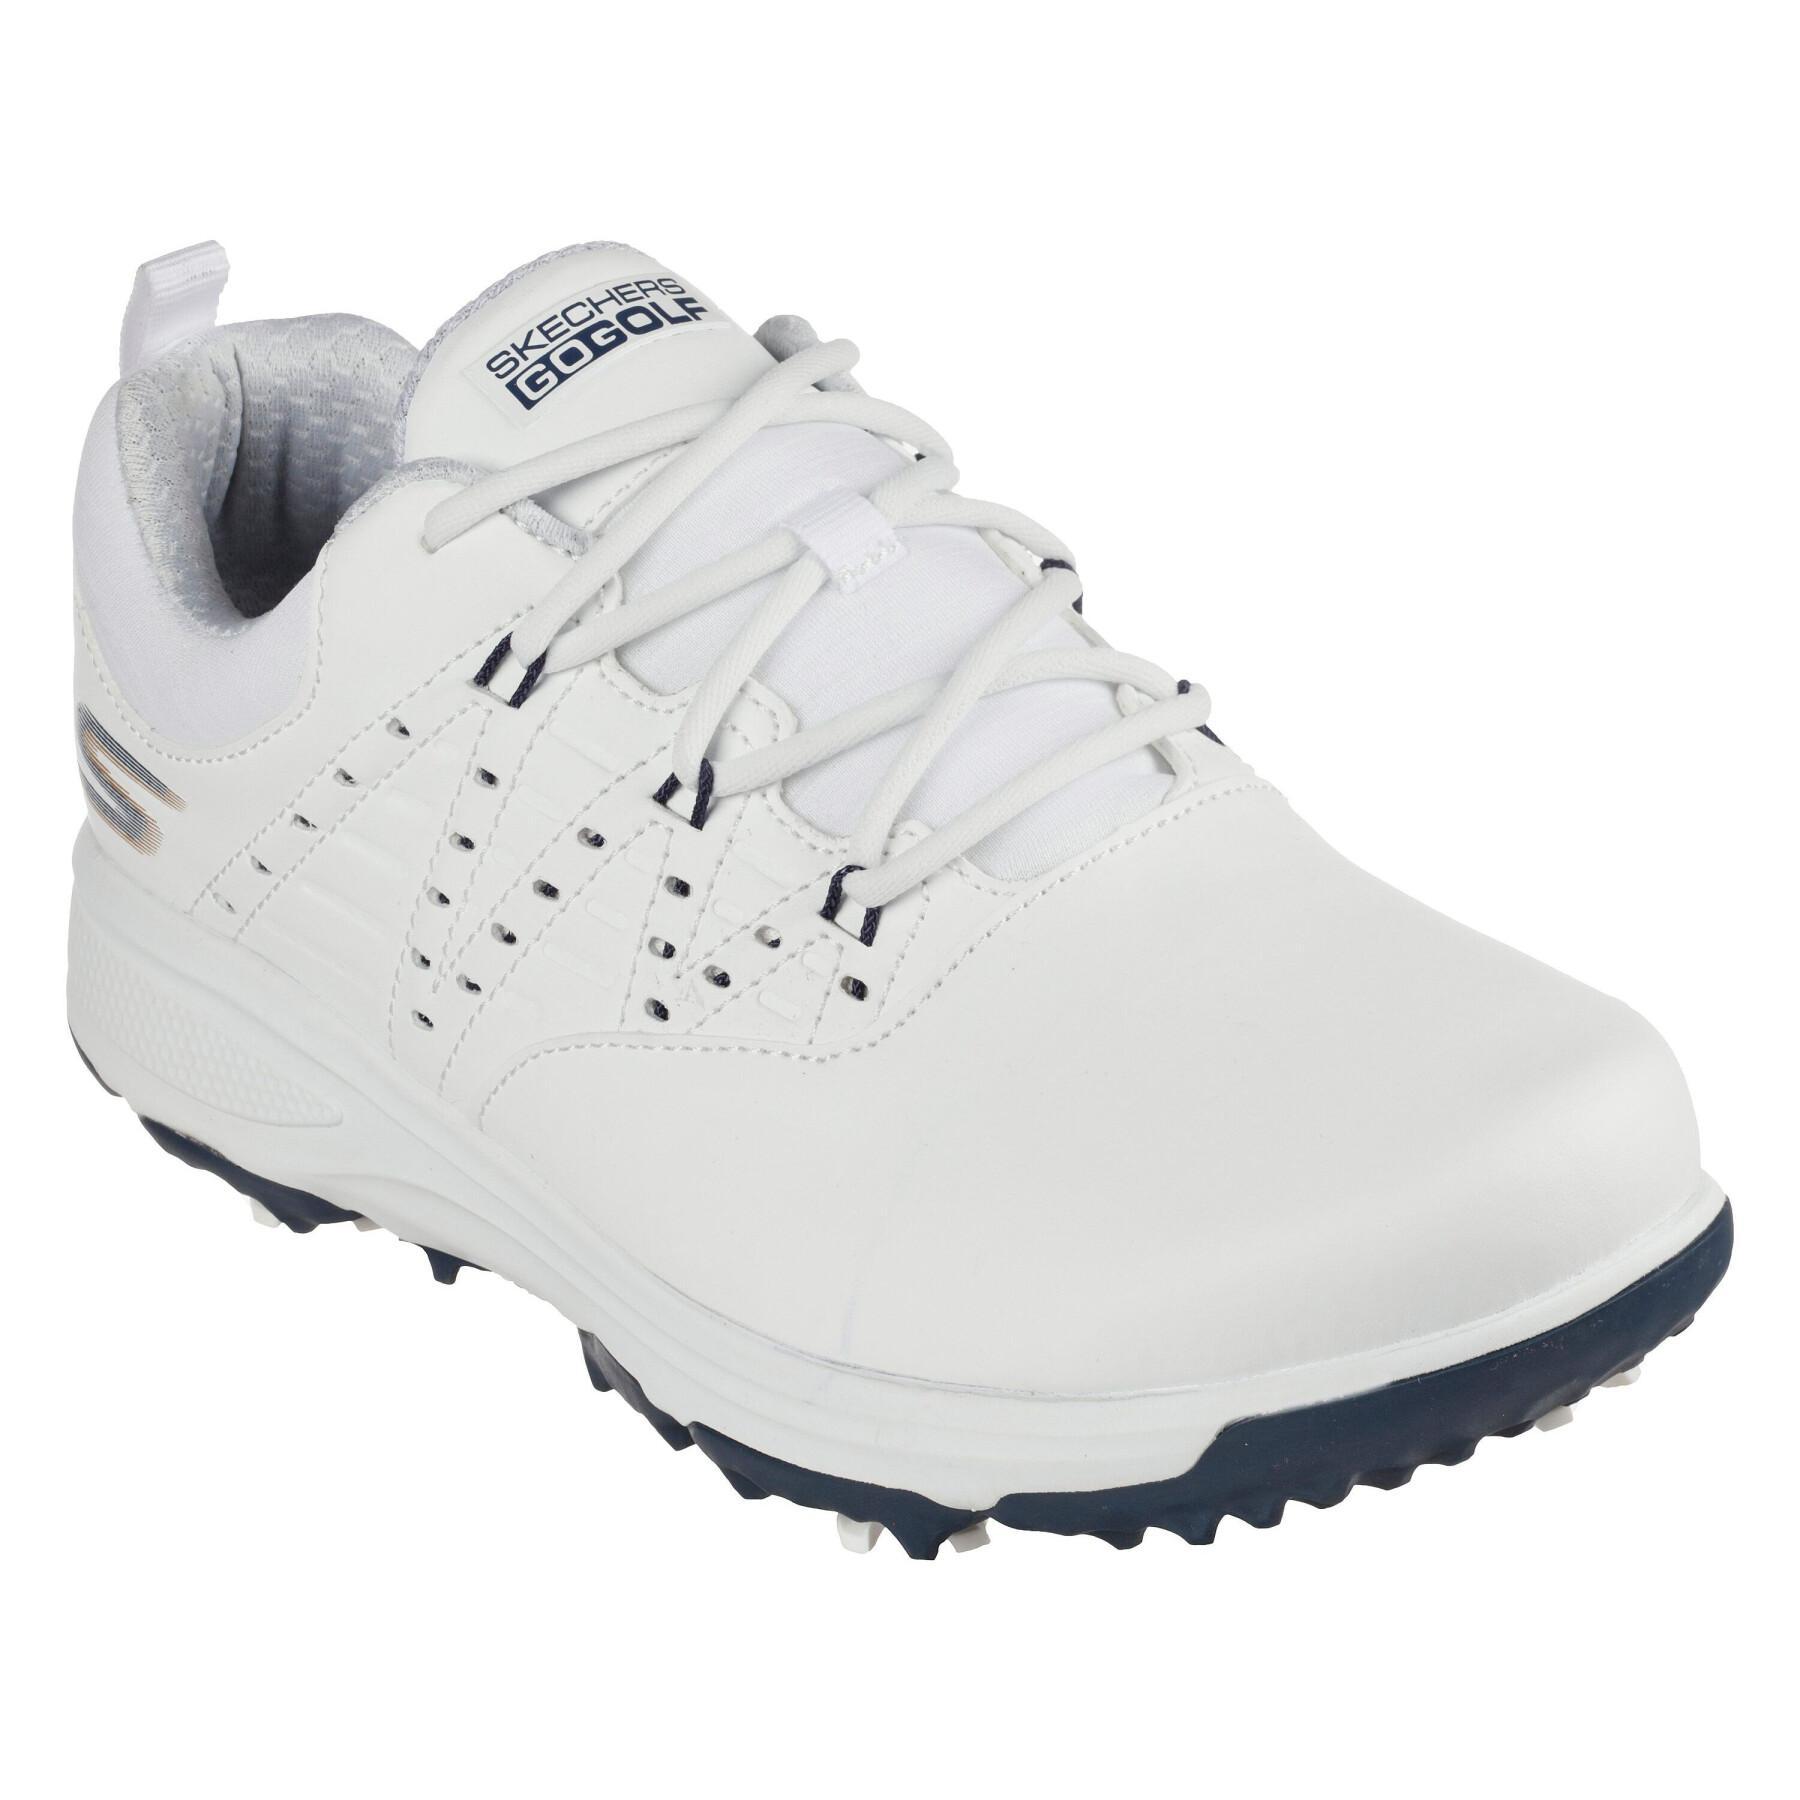 Chaussures de golf femme Skechers Golf Pro 2